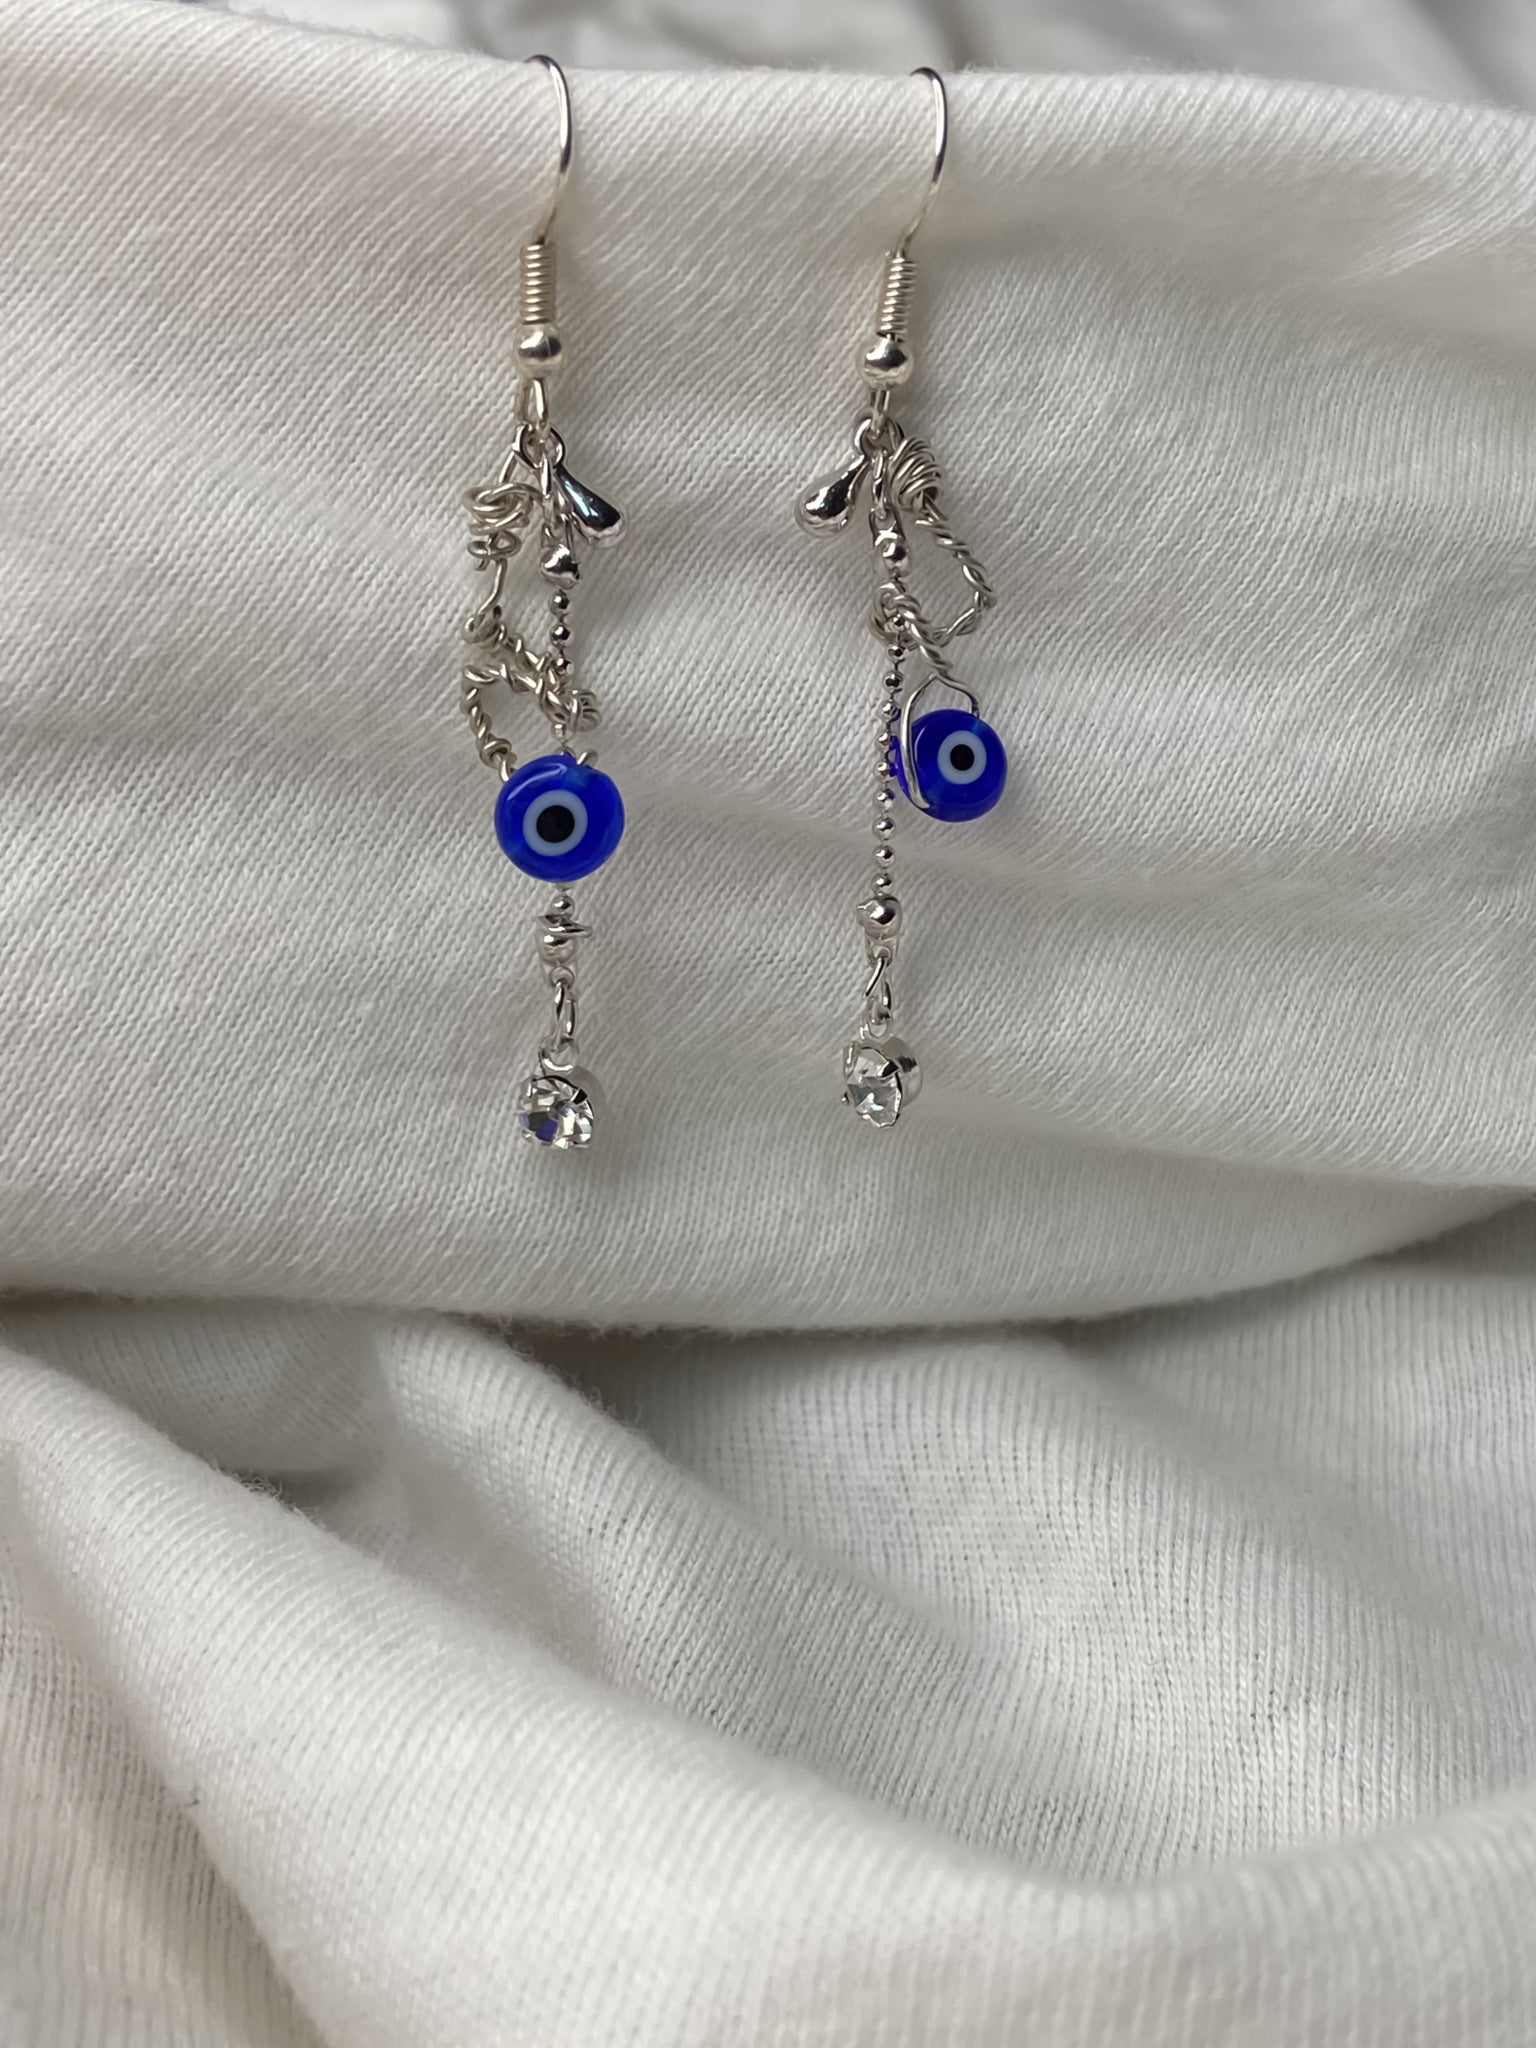 Handmade silver wire wrapped evil eye dangle drop earrings.